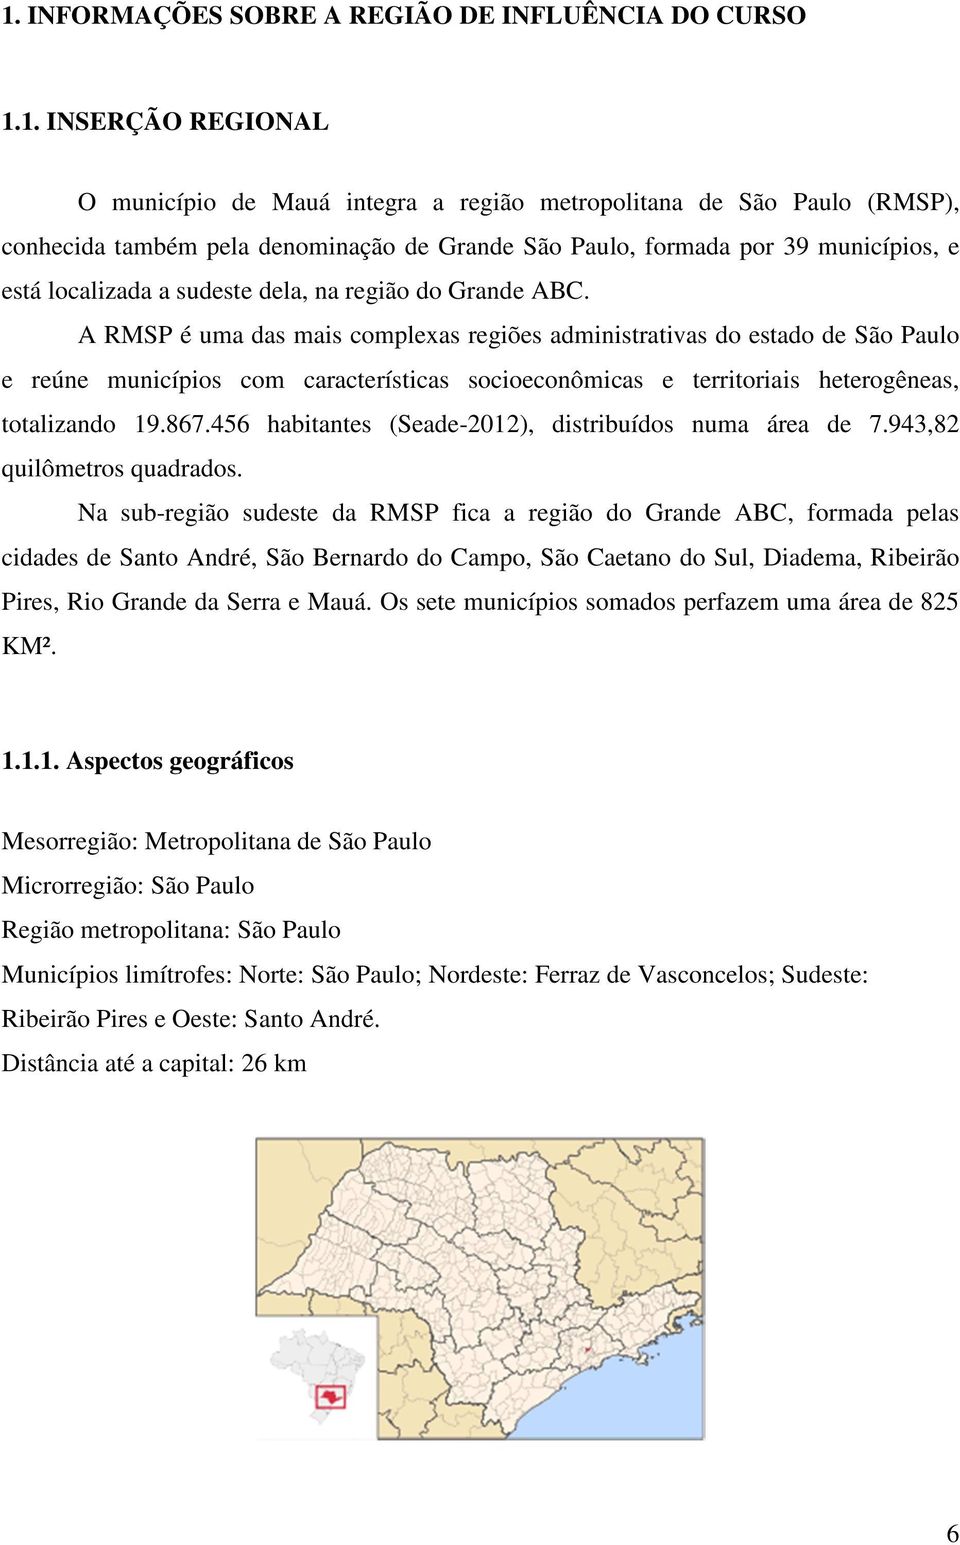 A RMSP é uma das mais complexas regiões administrativas do estado de São Paulo e reúne municípios com características socioeconômicas e territoriais heterogêneas, totalizando 19.867.